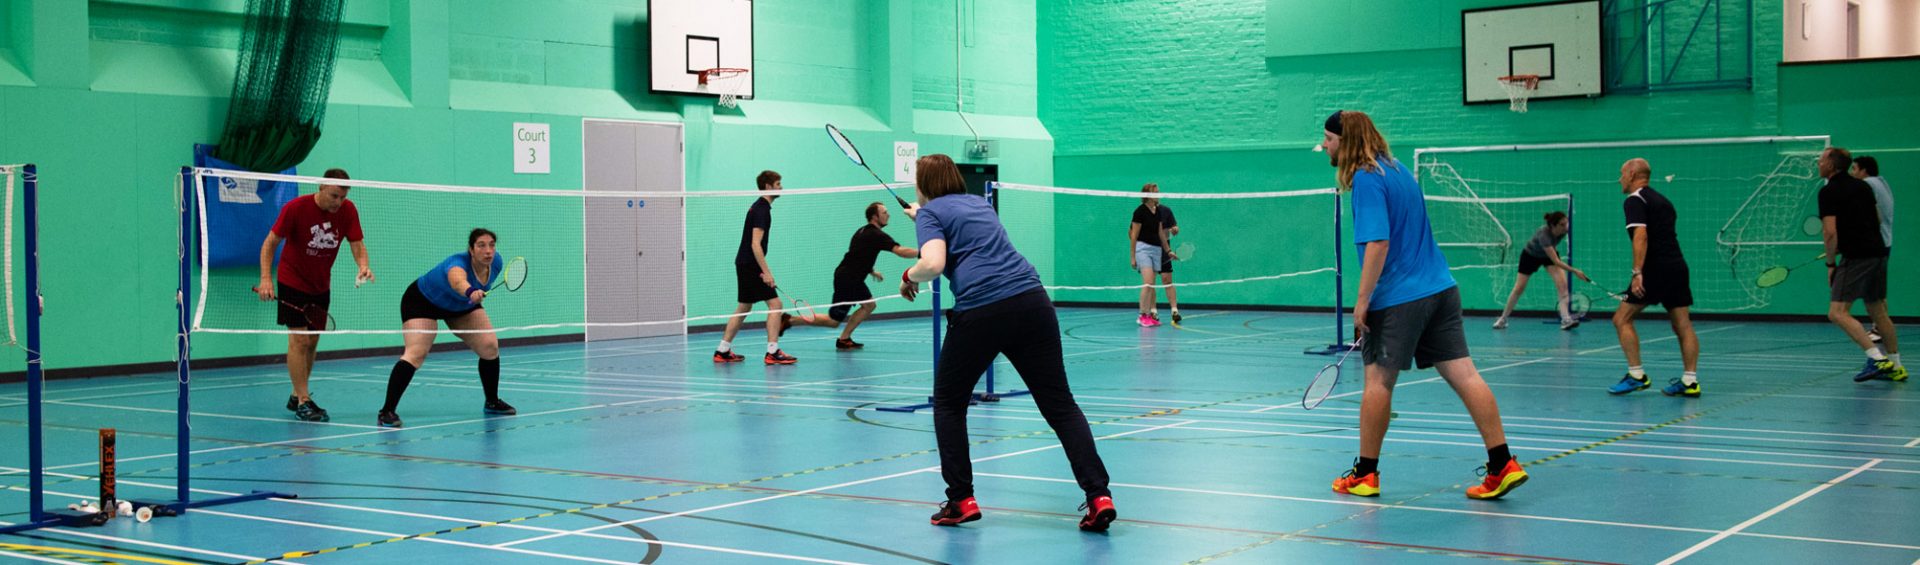 People playing mixed badminton at Keynsham Badminton Club